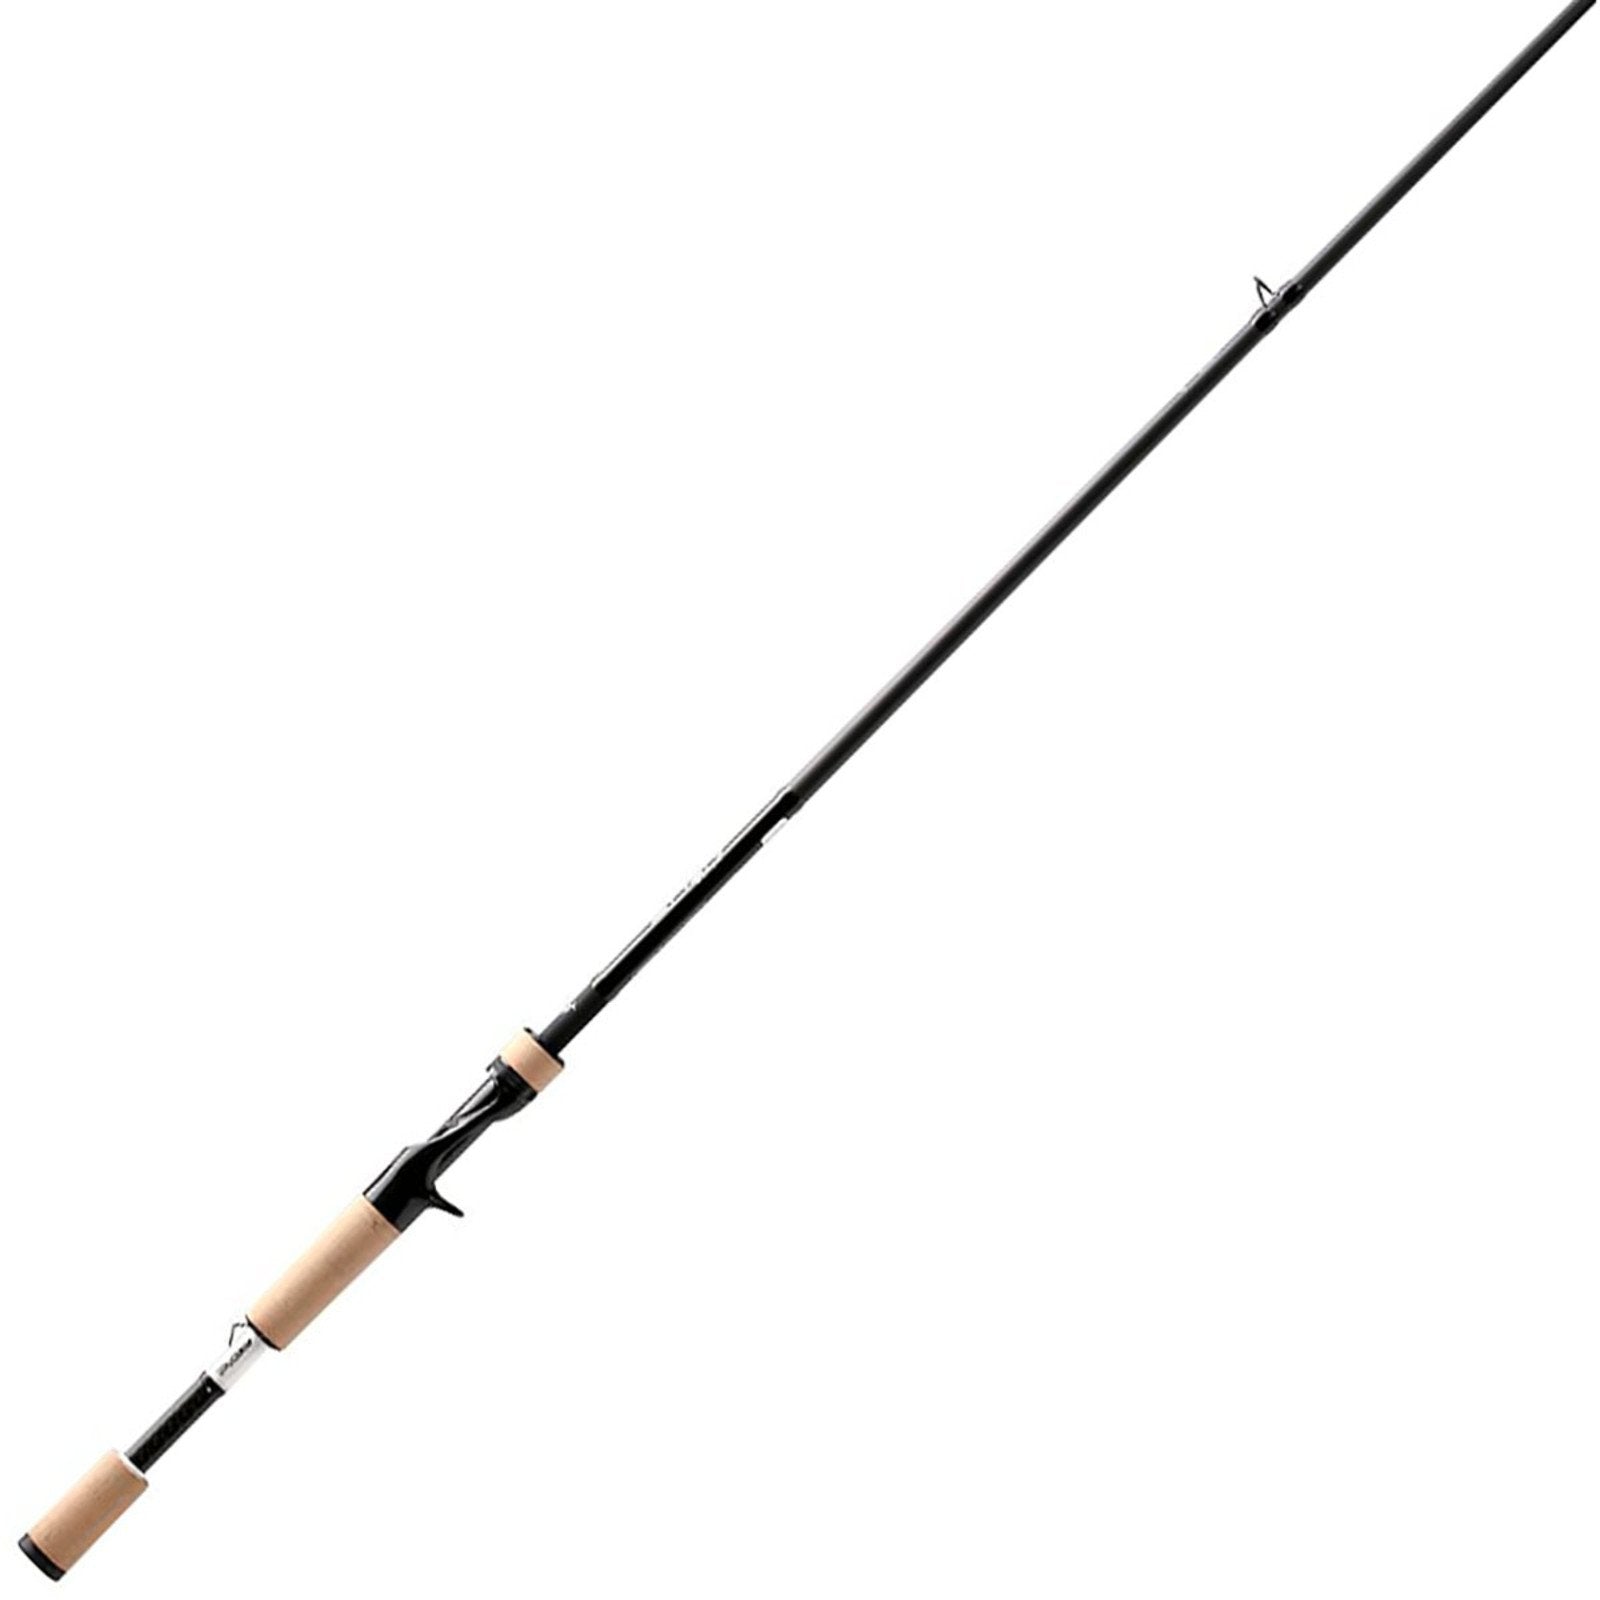 13 FISHING - Omen Black - 8' 0 Extra Heavy Casting Rod - OB3C8XH